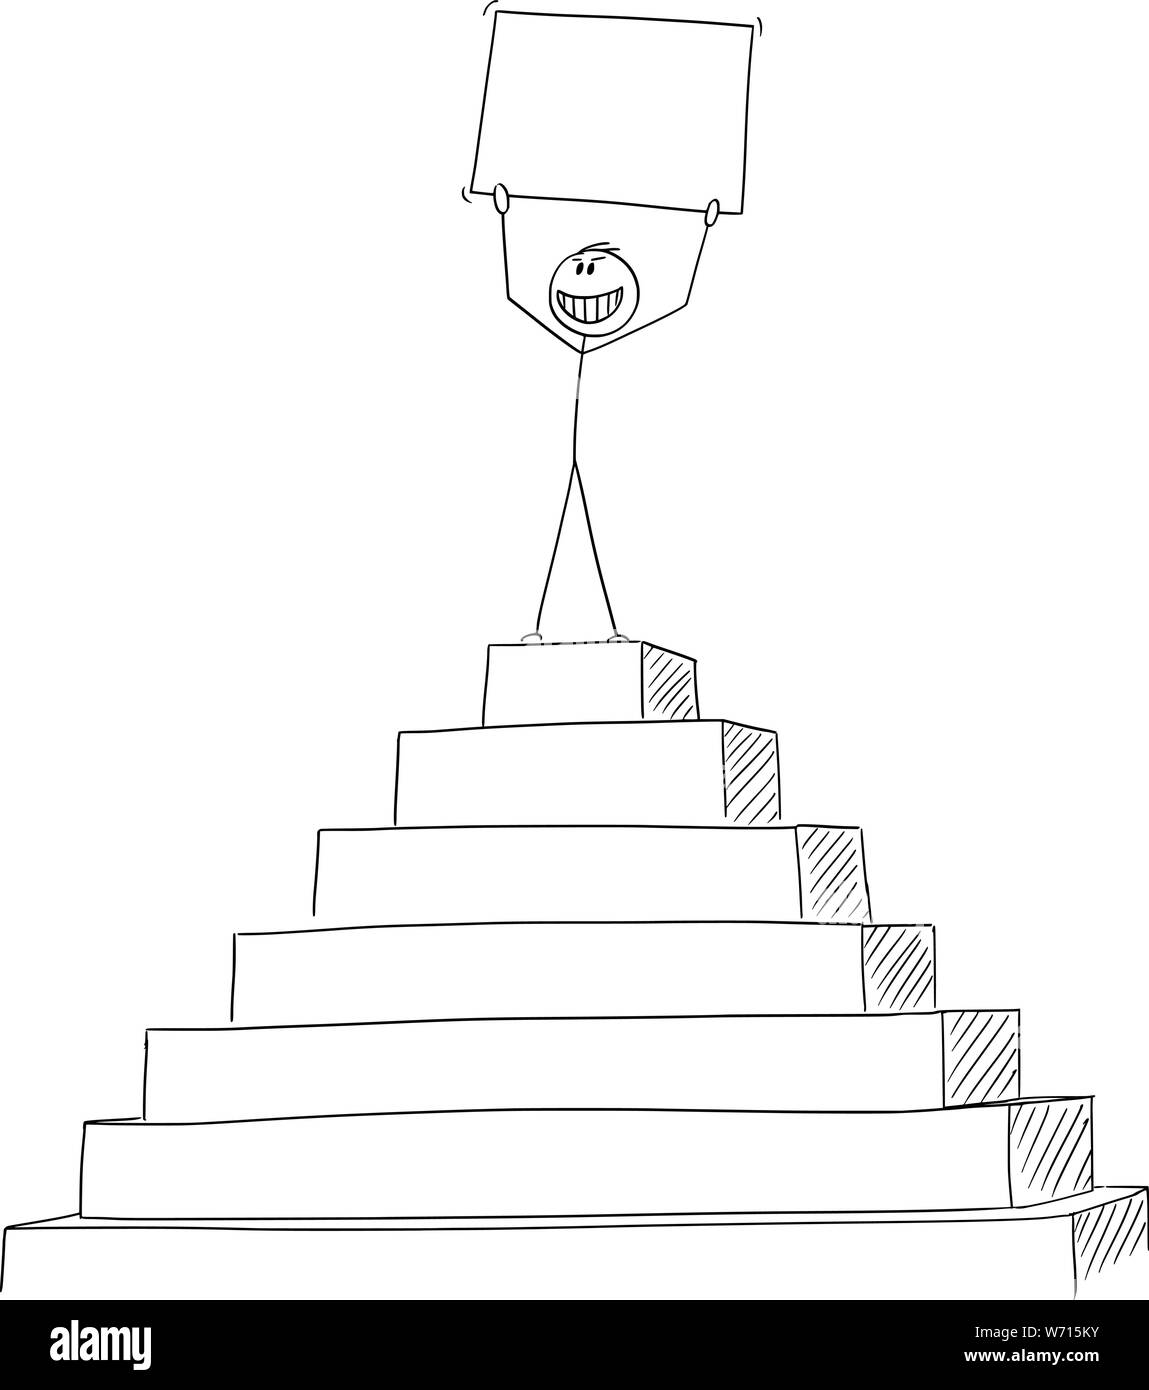 Vector cartoon stick figura disegno illustrazione concettuale di uomo di successo o imprenditore che celebra il successo sul picco della piramide con segno vuoto nelle mani. Illustrazione Vettoriale